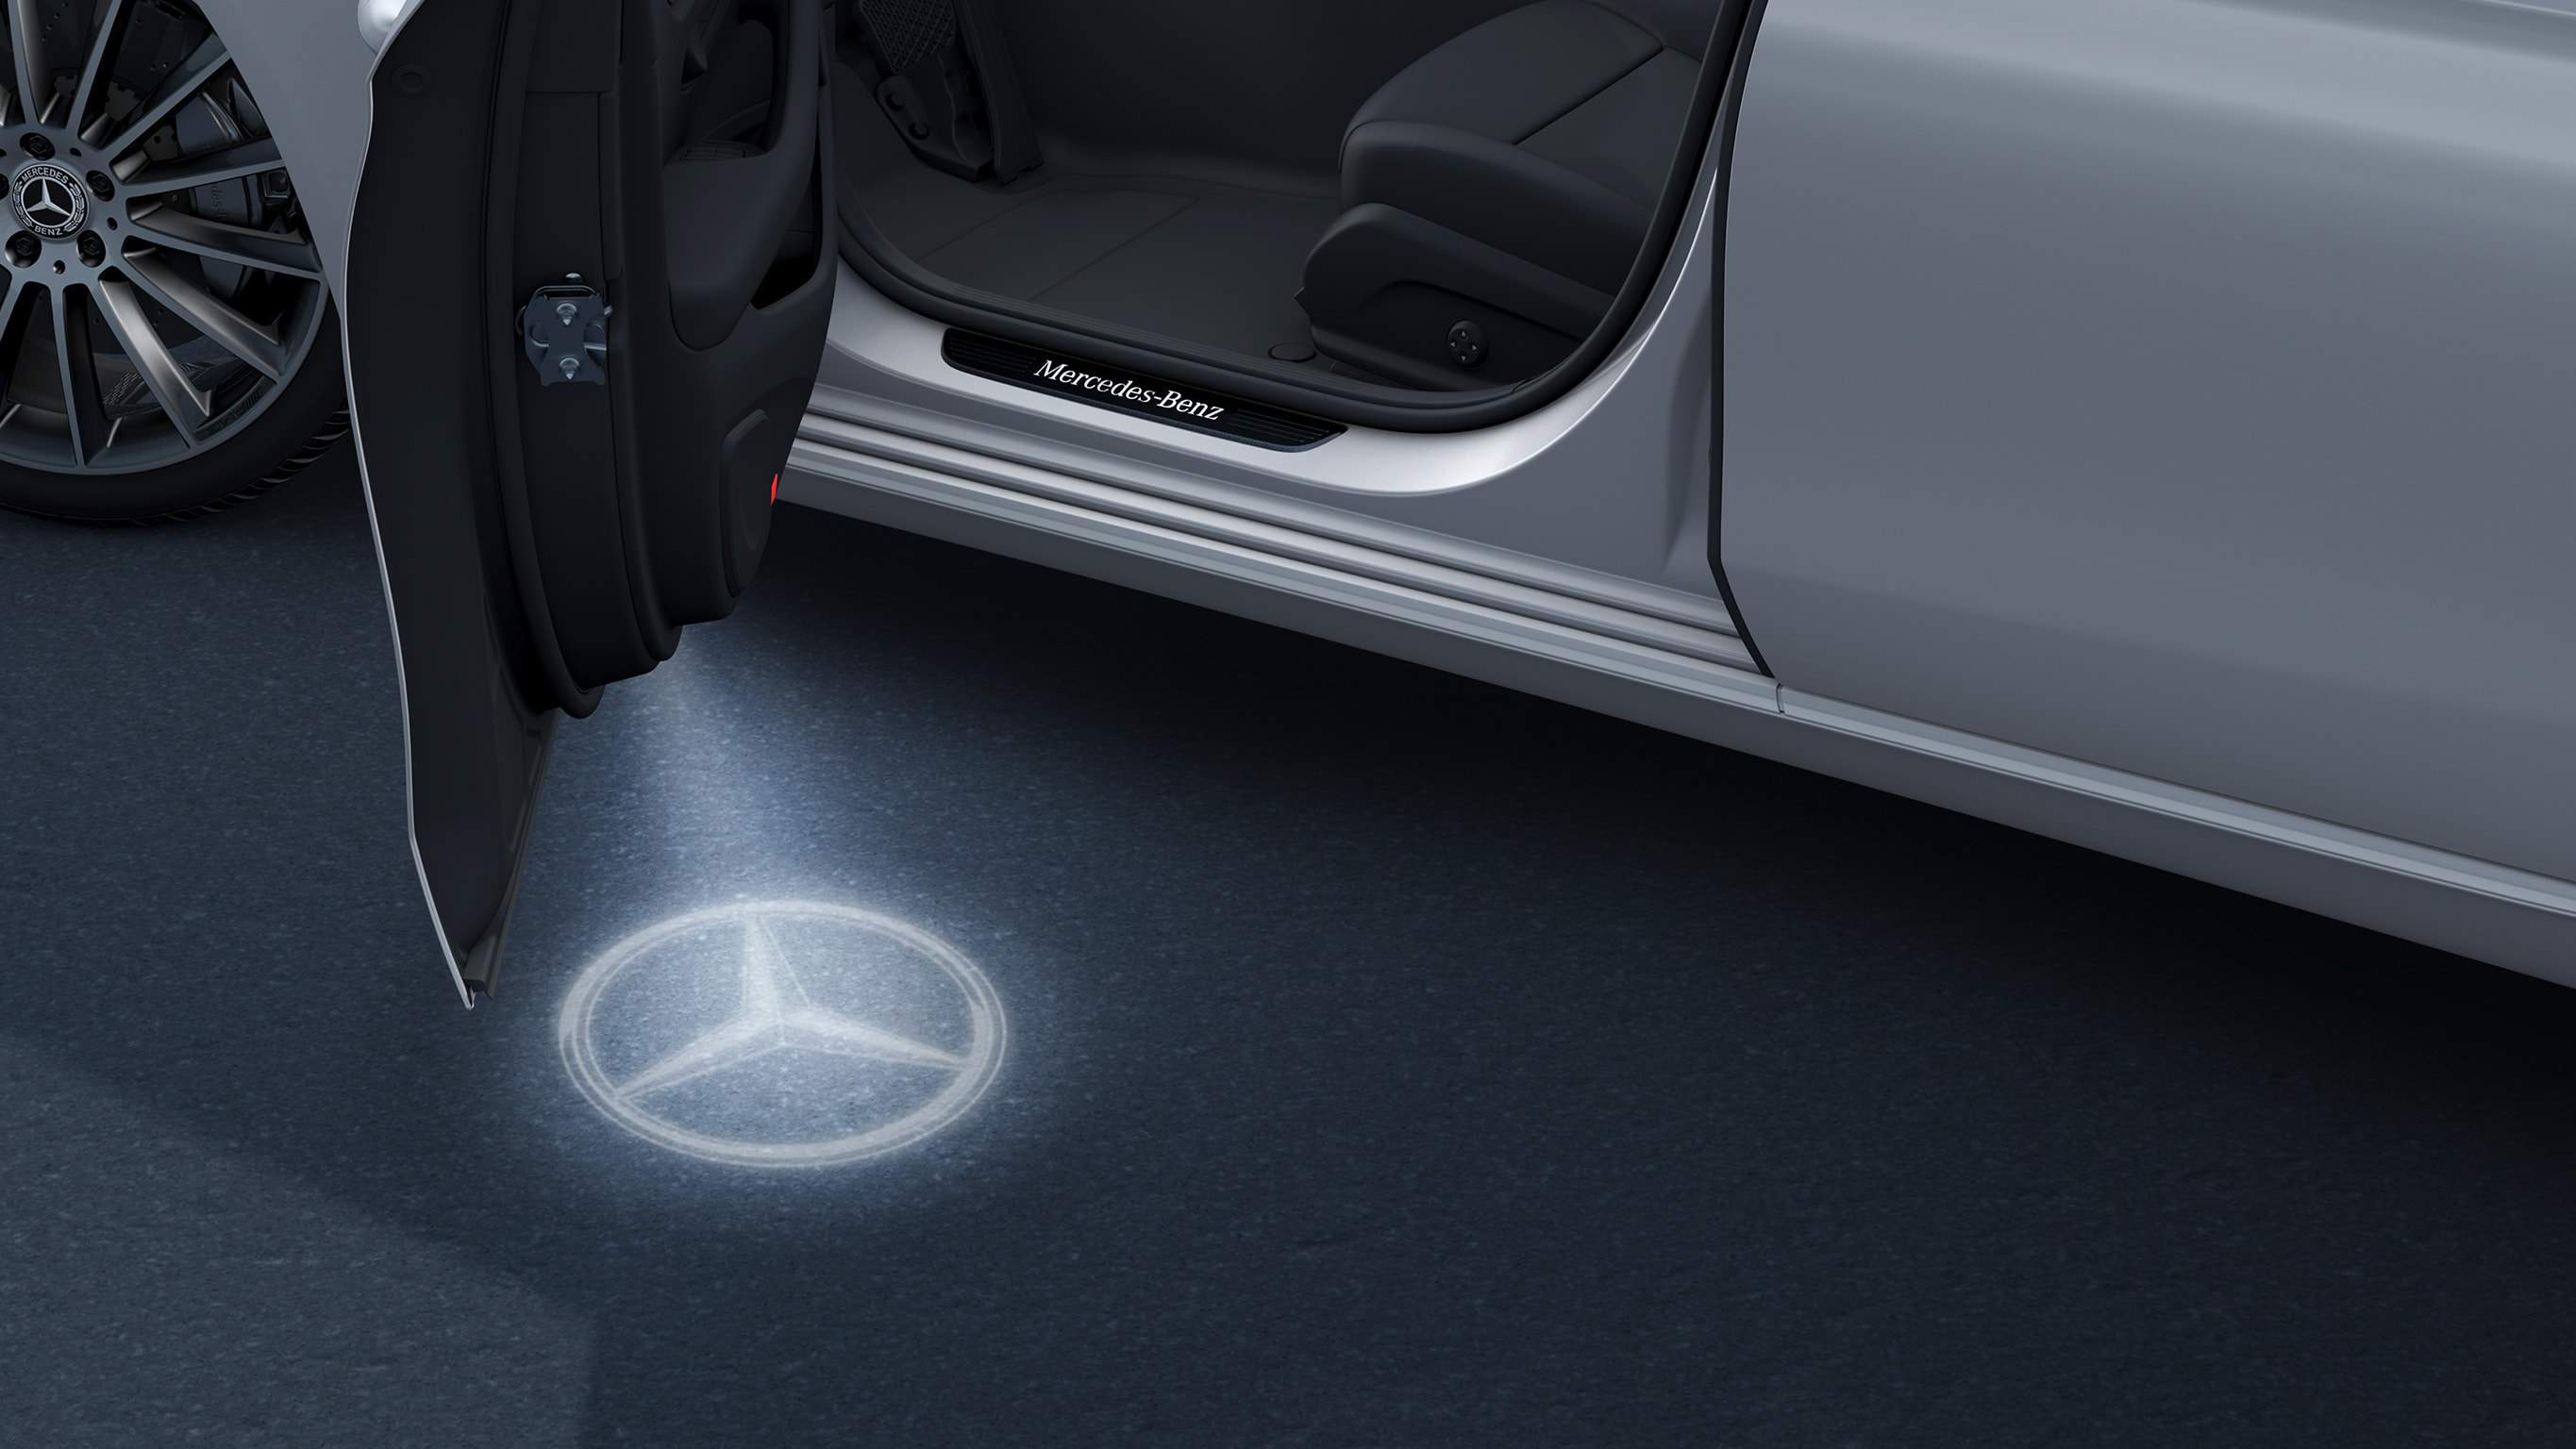 Na obrázku je EQA od Mercedes-EQ s orientačním osvětlením. Orientační osvětlení promítá logo značky v technologii LED vedle otevřených předních dveří.